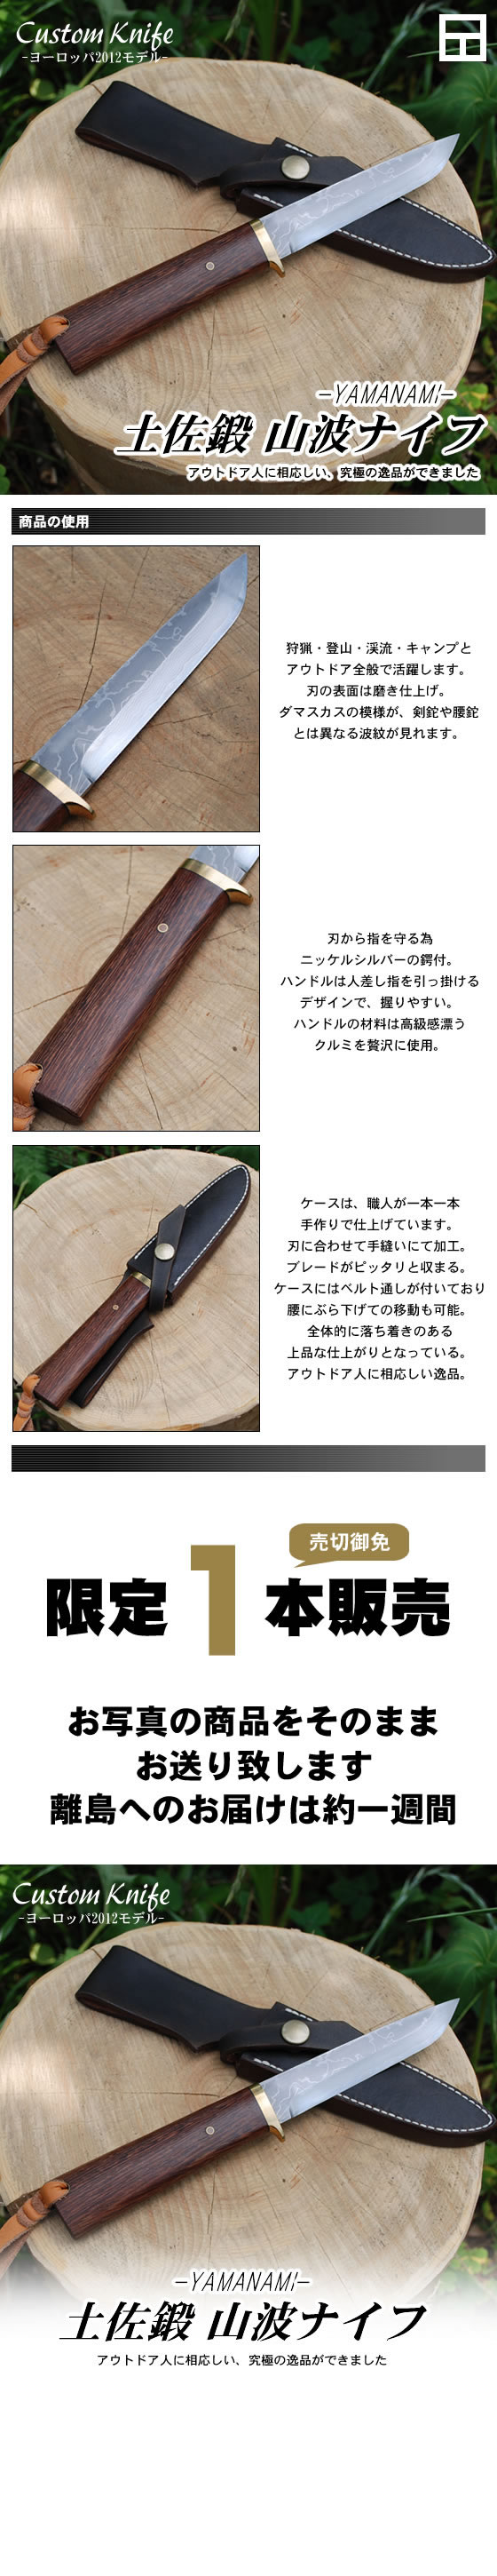 Custom Knife ヨーロッパモデル 土佐鍛山波